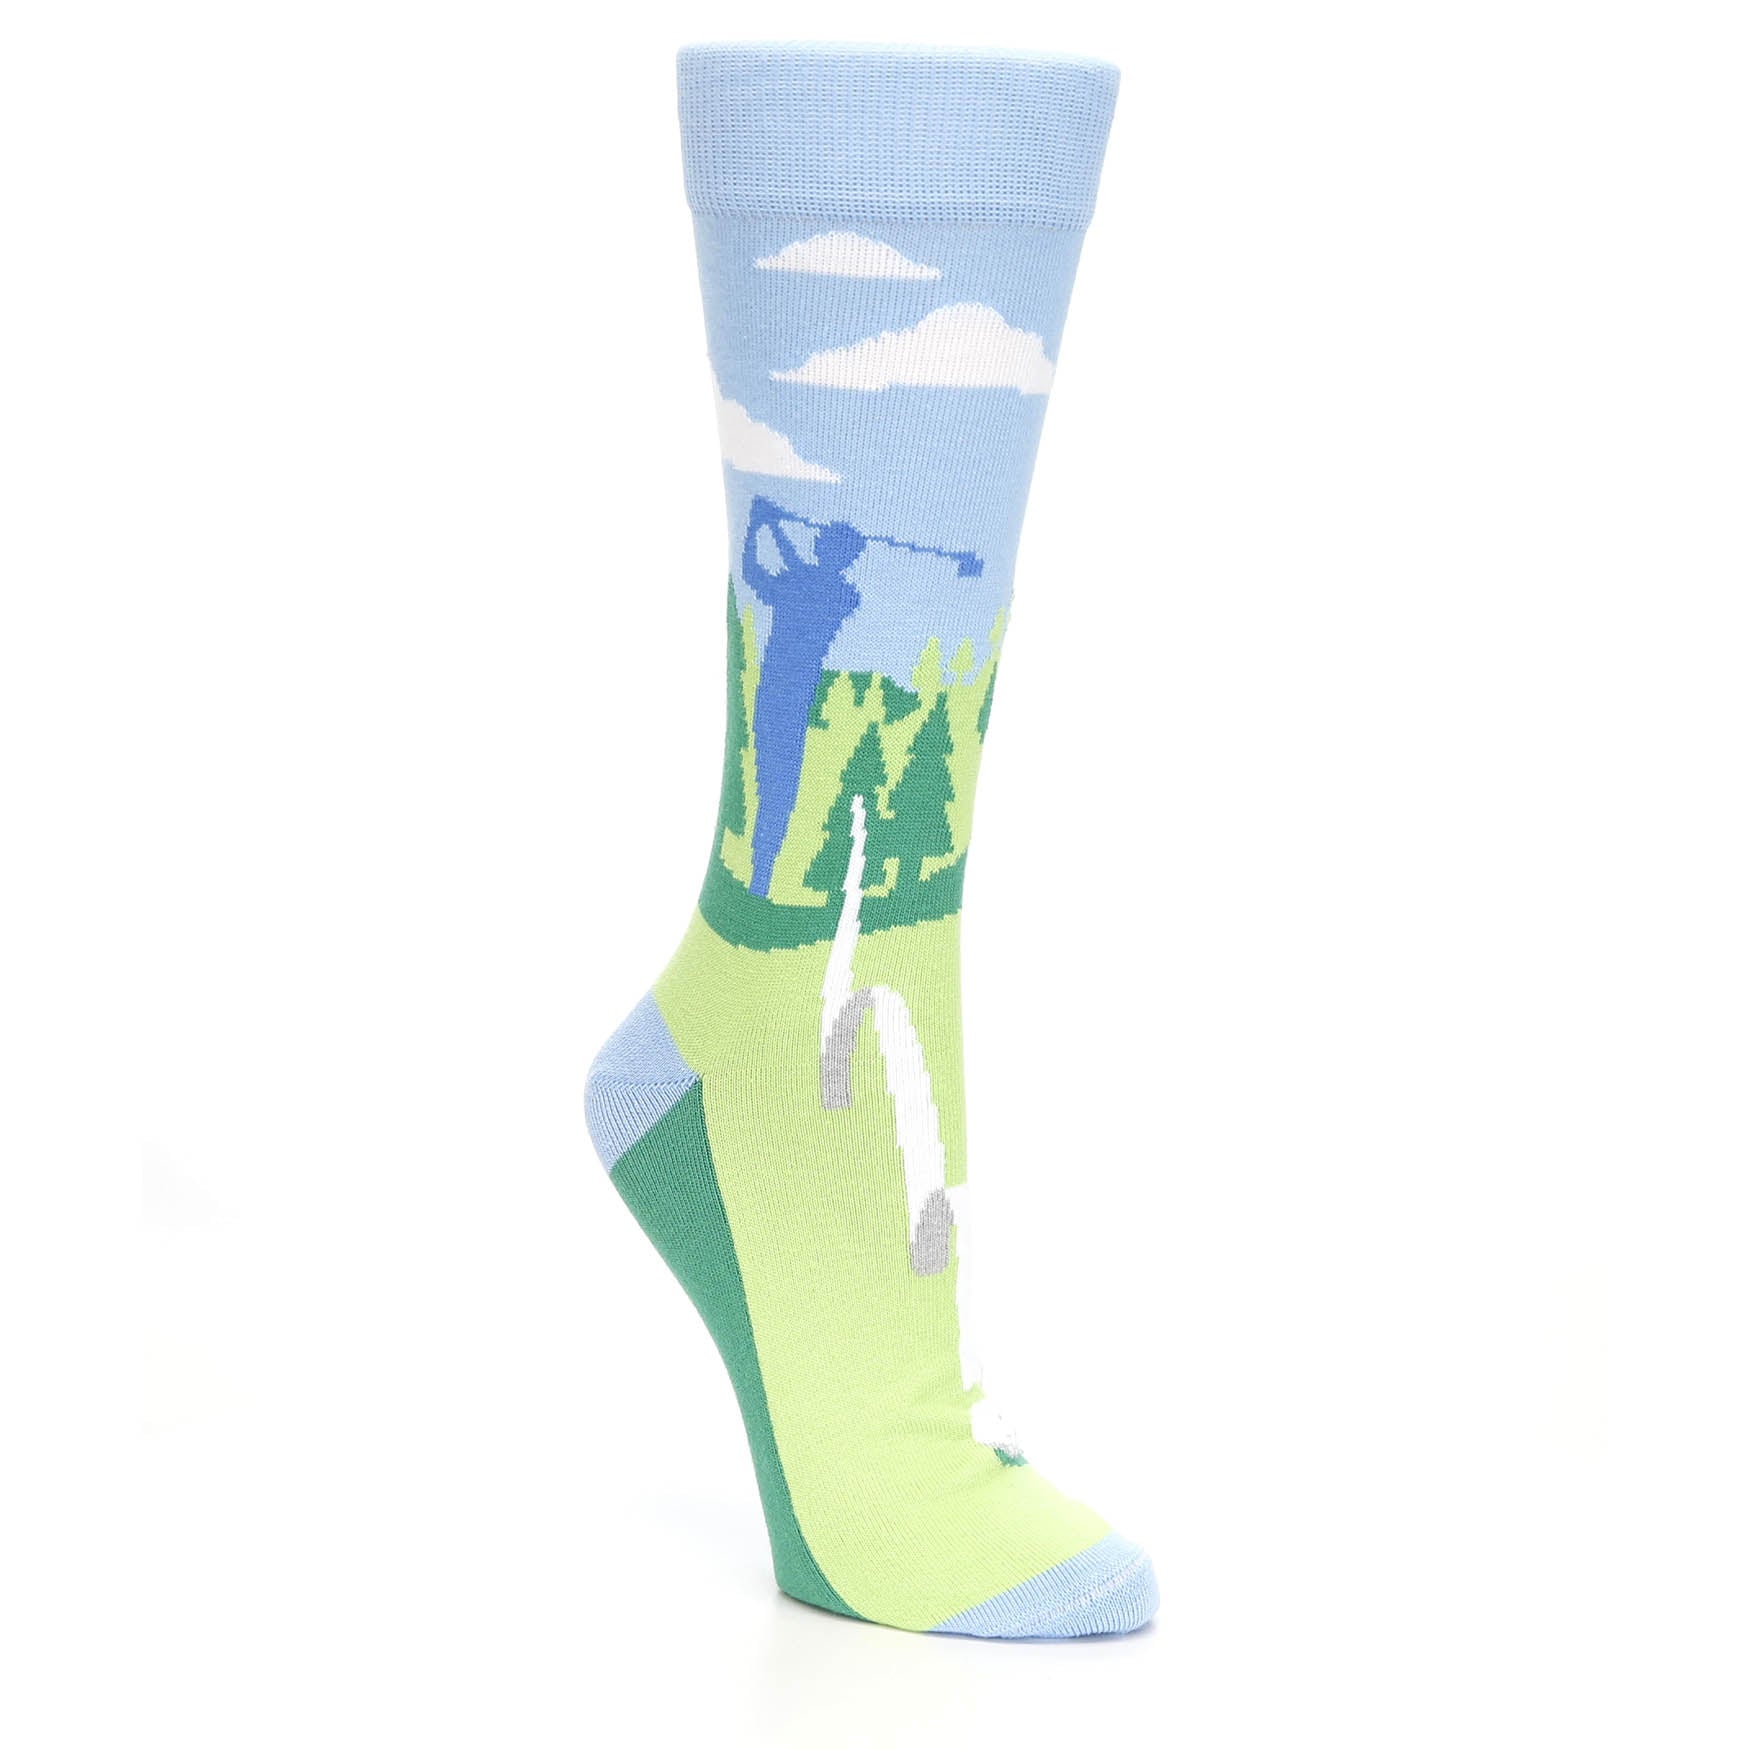 Golf Socks - USA Made - Women's Novelty Socks